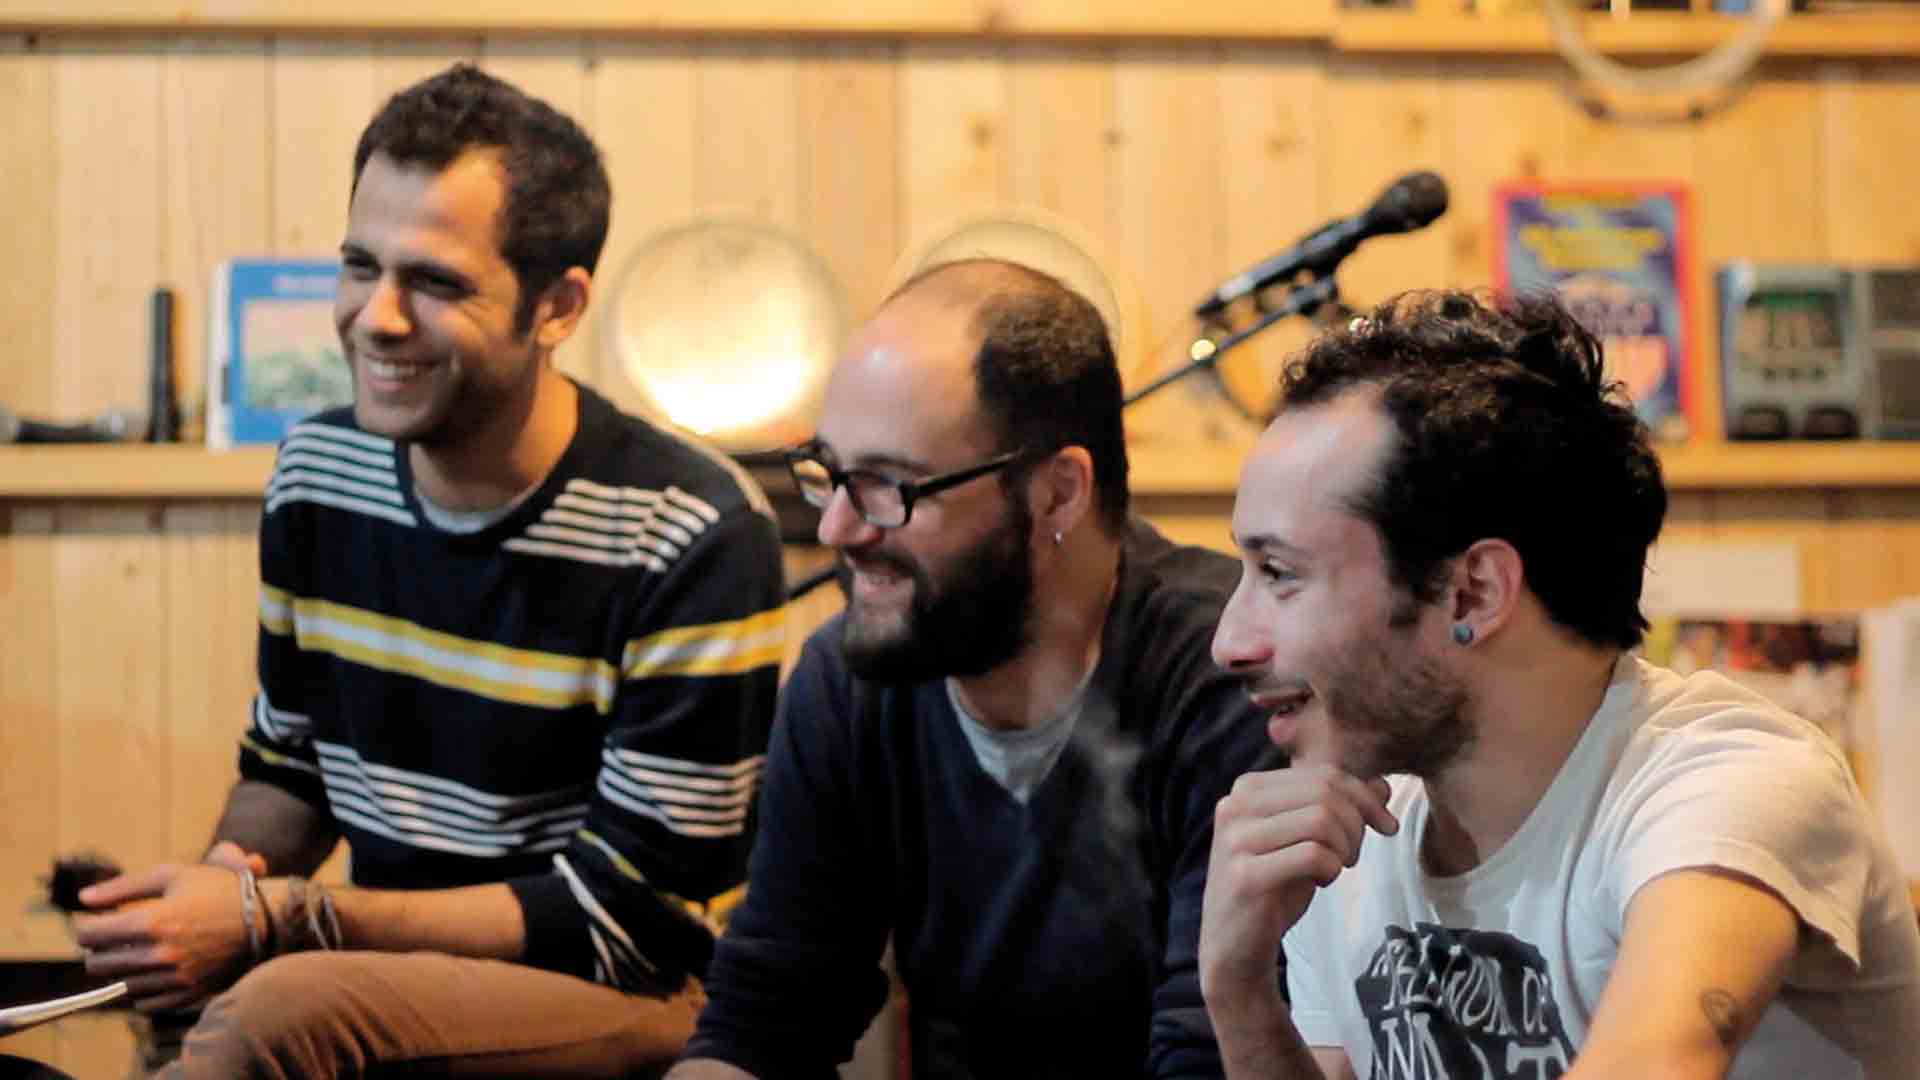 Left to Right: Dani Shukri, Khaled Omran, Tarek Khuluki // TANJARET DAGHET //
photo credit: Moussa Shabandar